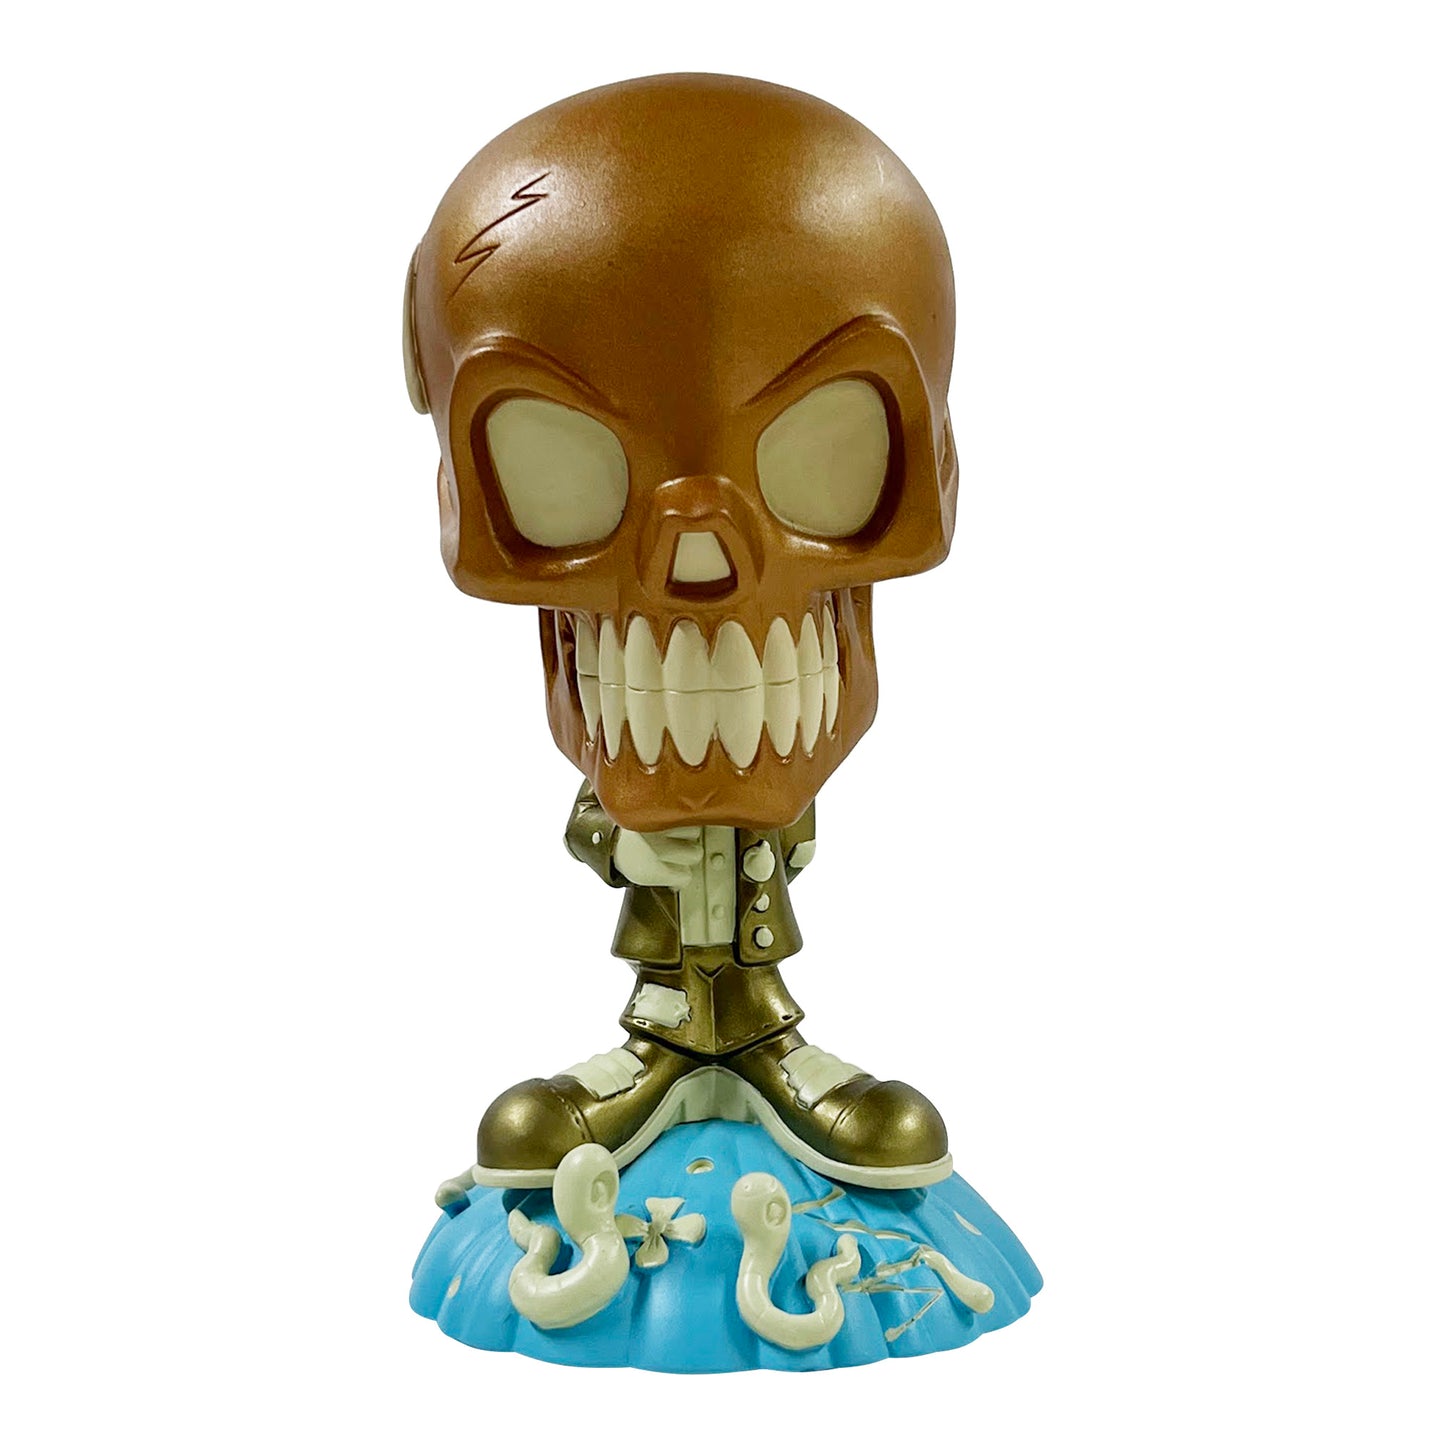 Steven Cerio: The Residents - Mr. Skull 7.5" Tall Vinyl Figure